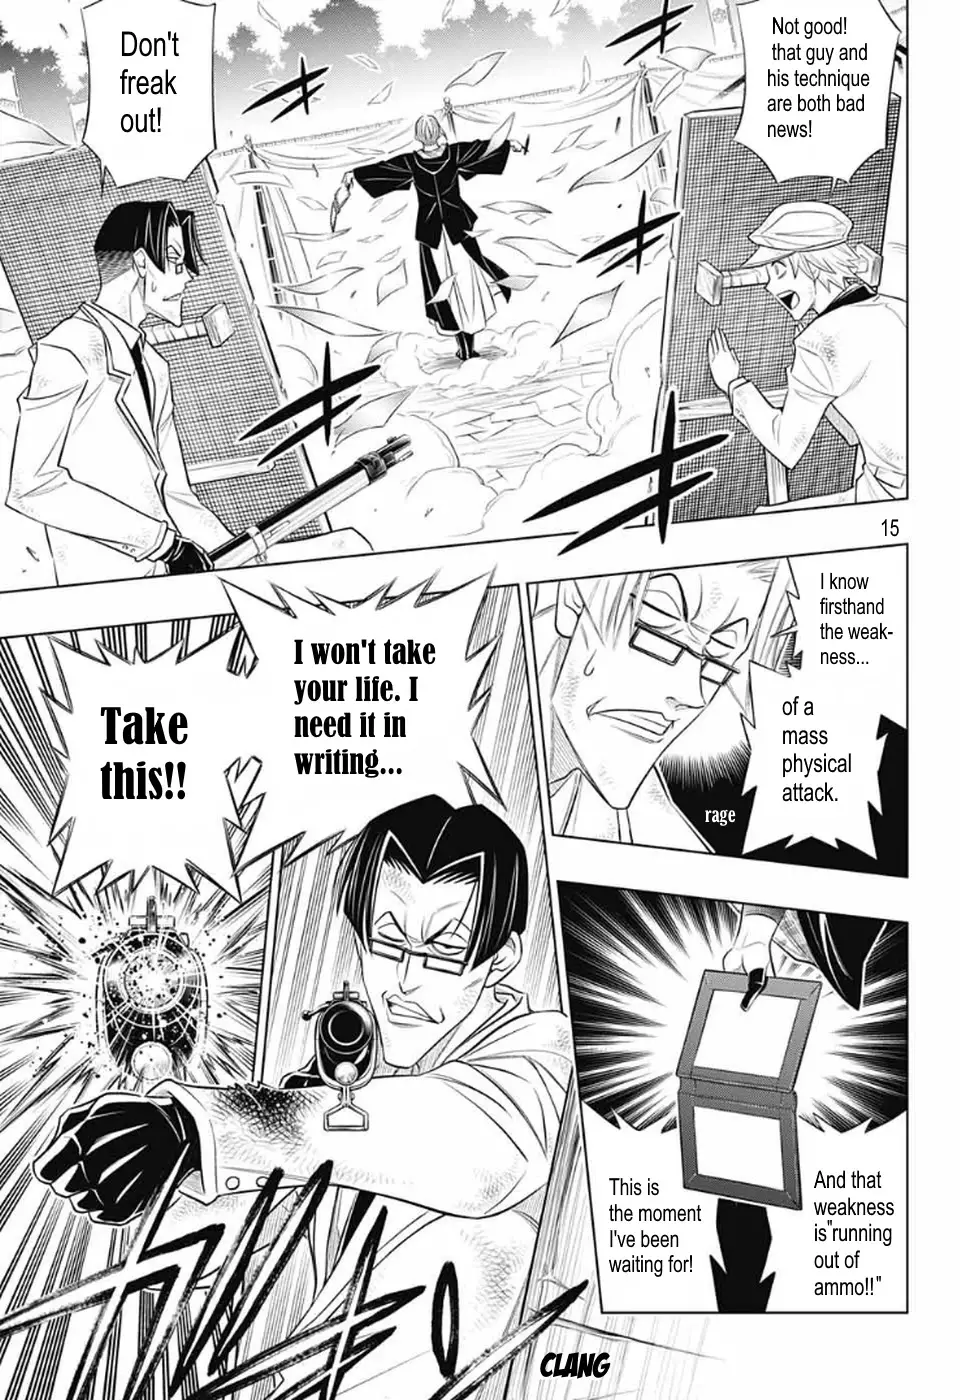 Rurouni Kenshin: Hokkaido Arc - 31 page 15